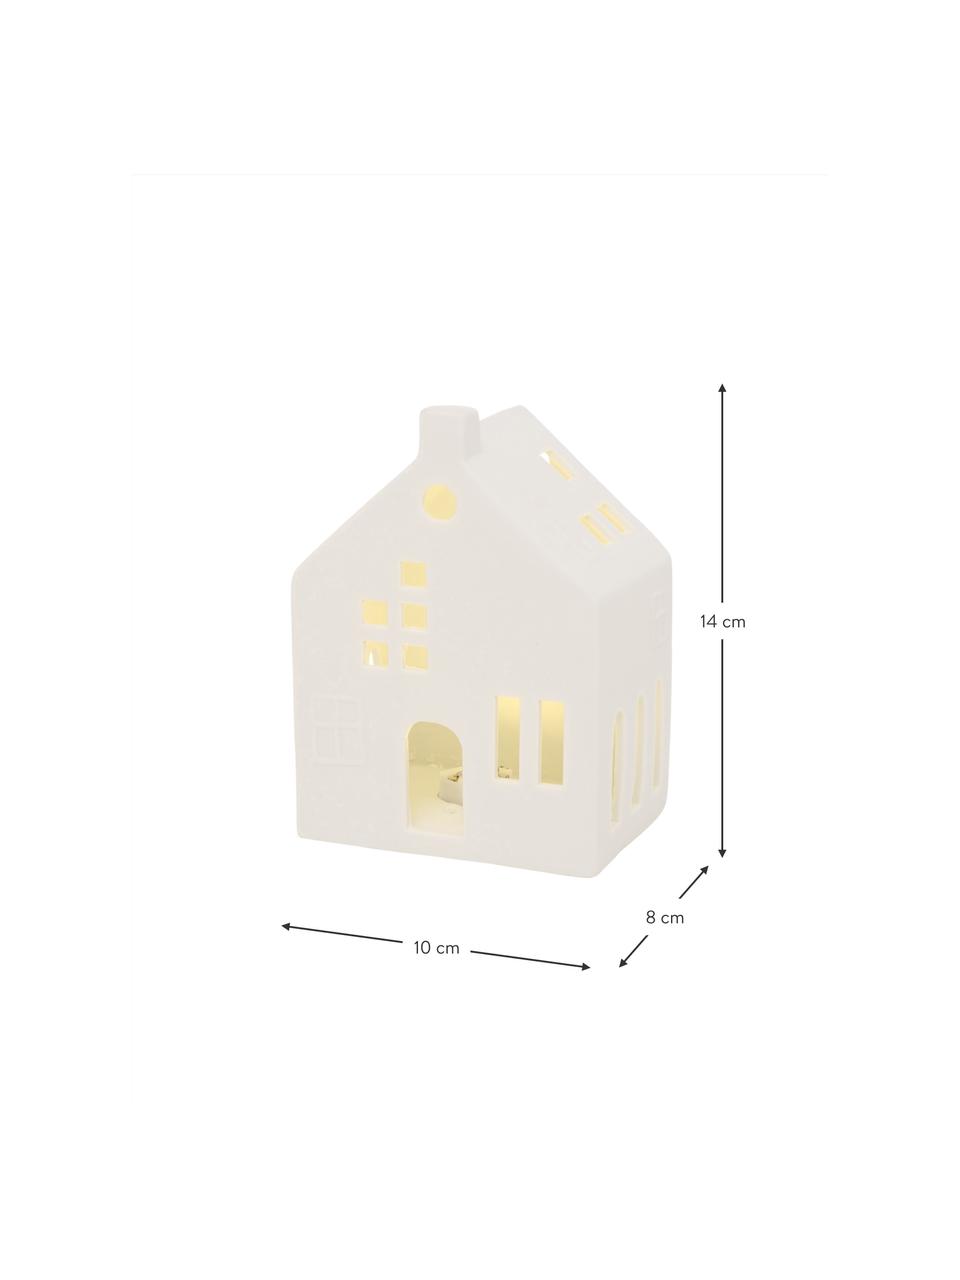 LED-Lichthaus Hygga aus Porzellan, H 14 cm, Porzellan, Weiß, B 10 x H 14 cm